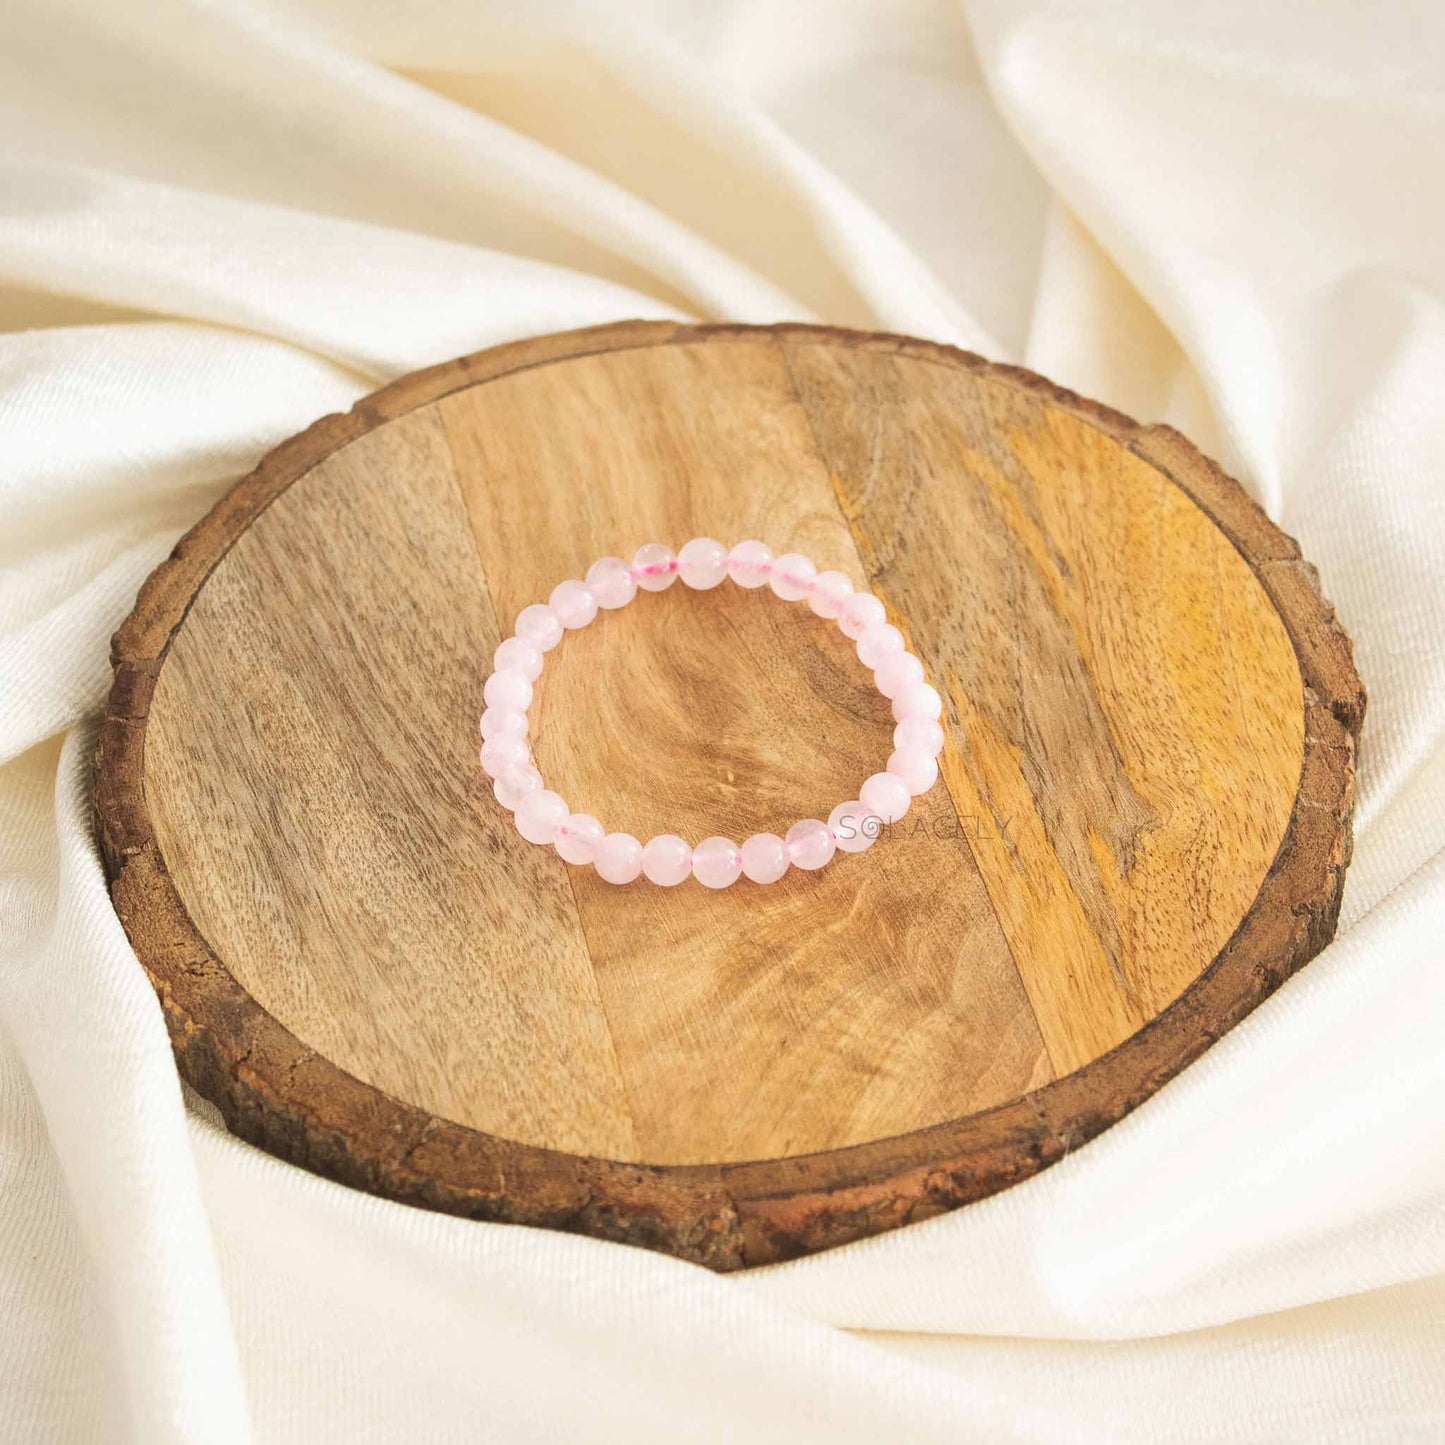 Rose Quartz Bracelet (6mm Beads)